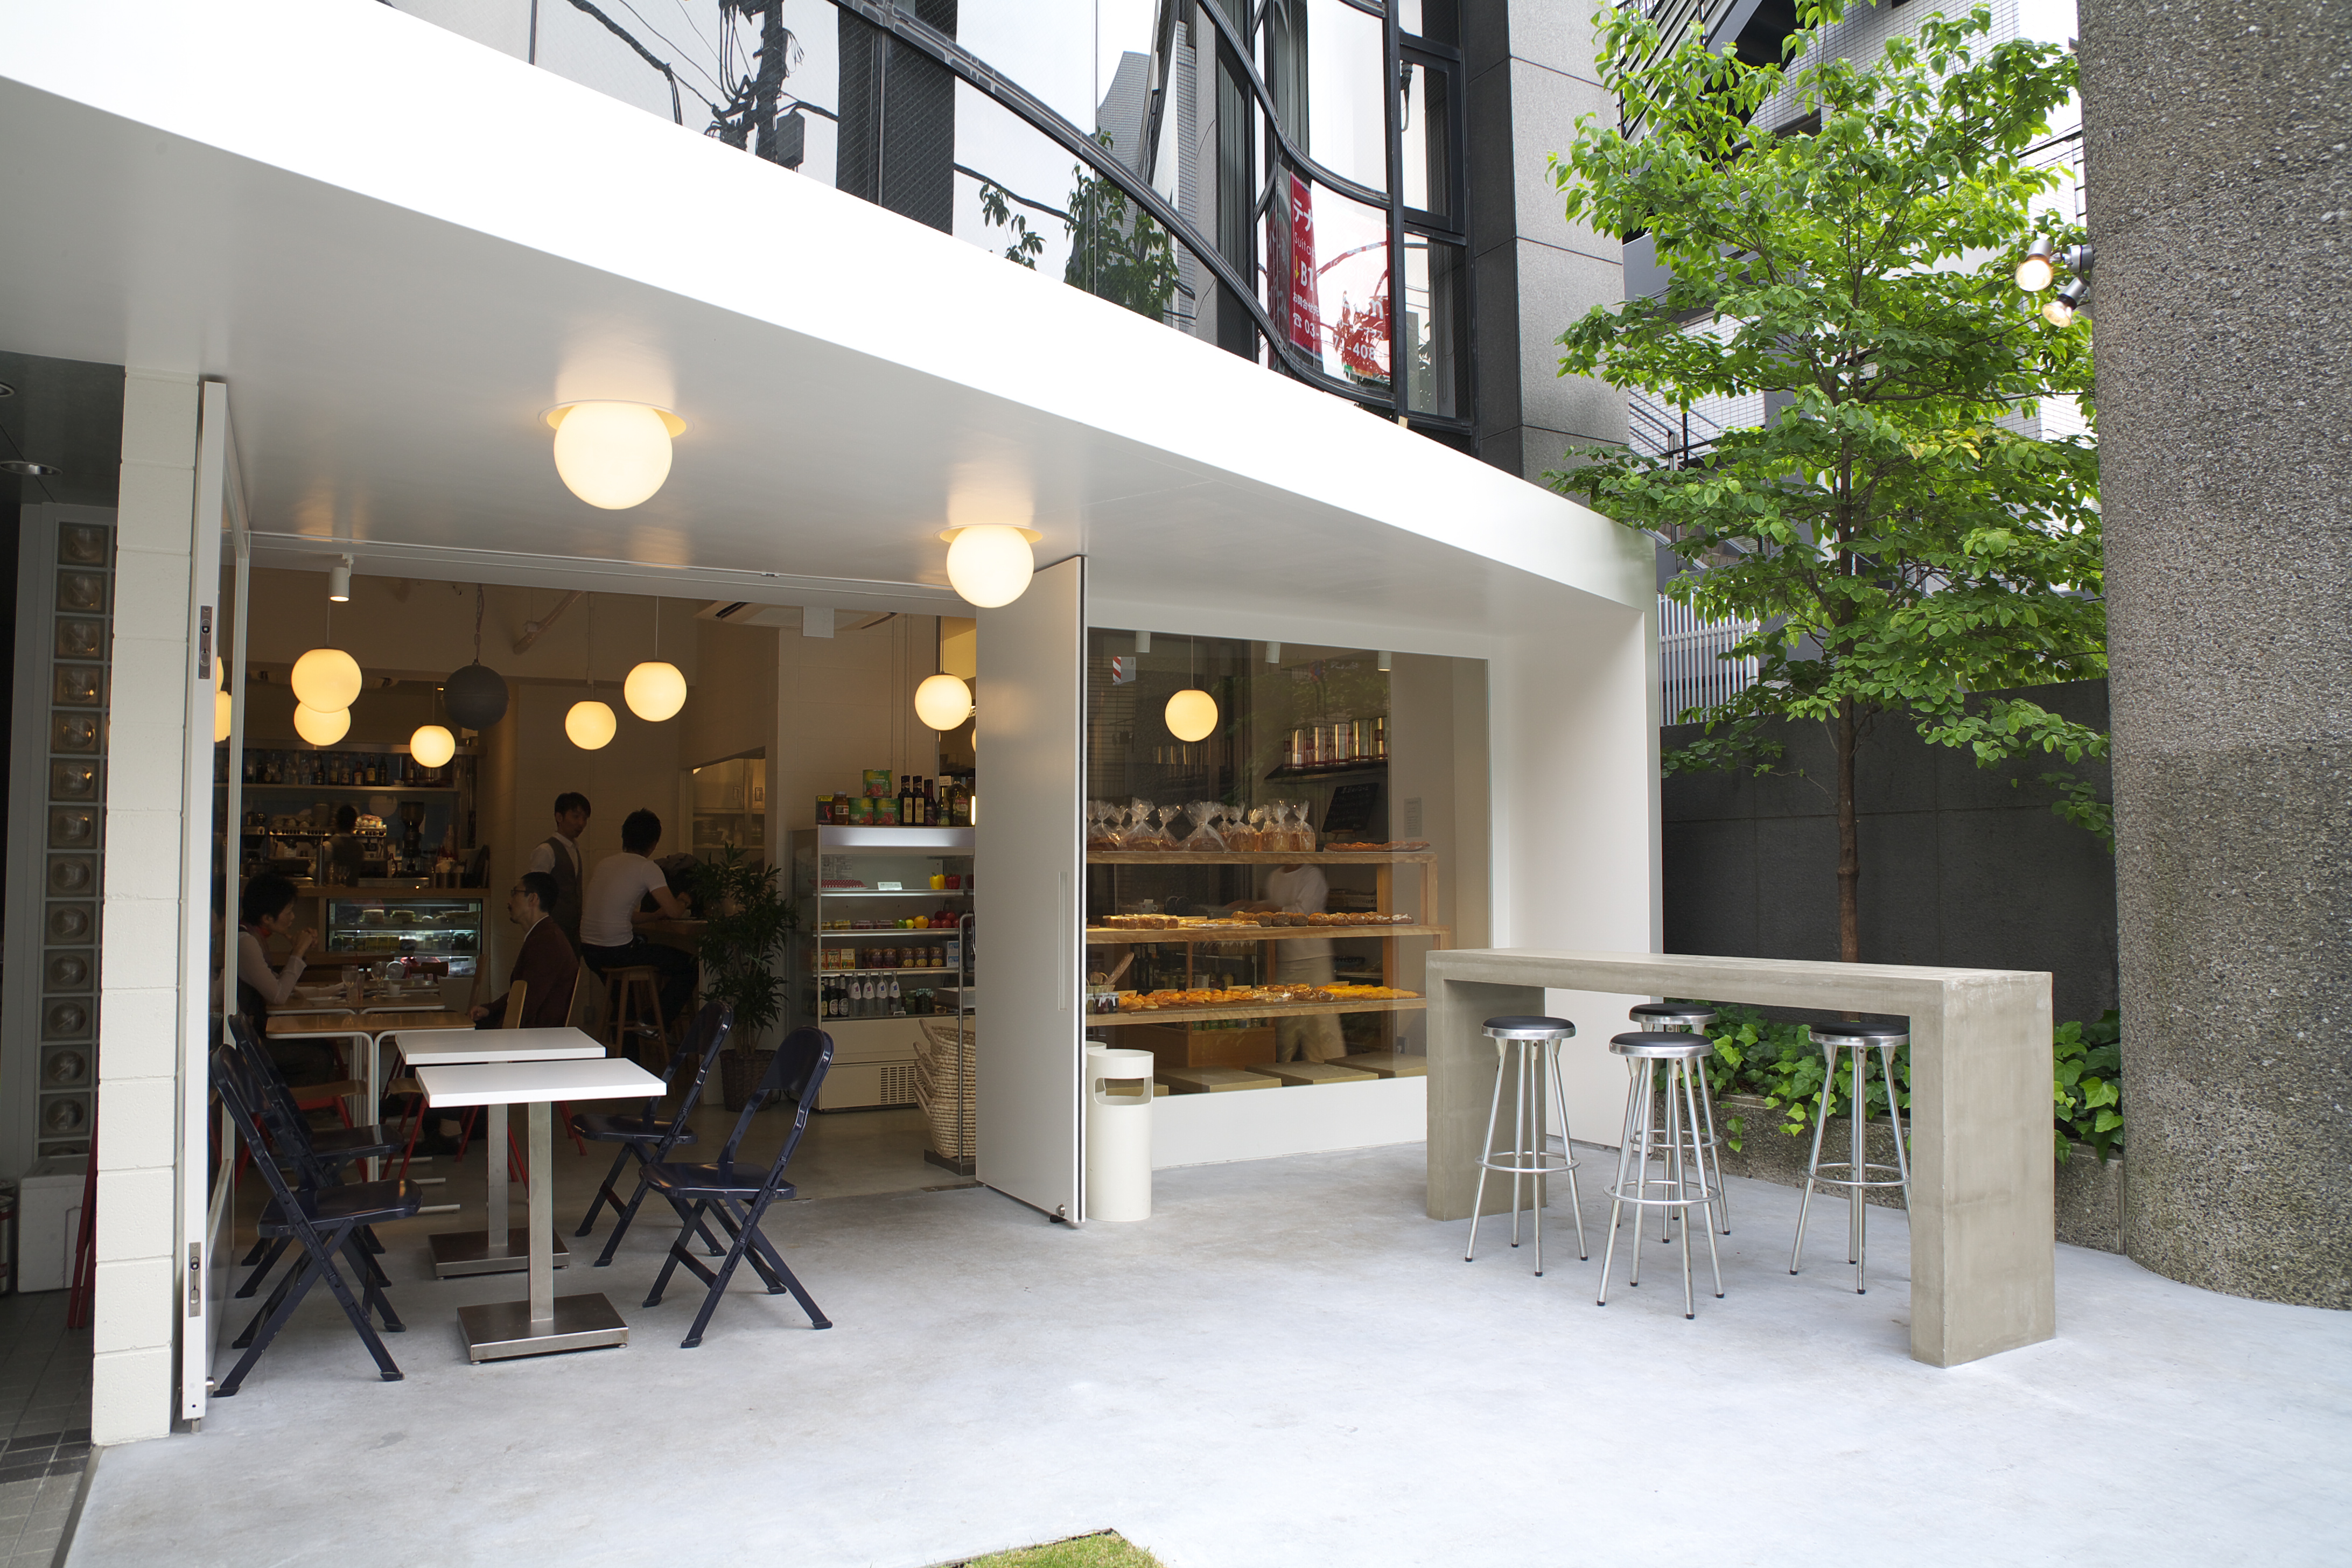 カフェマニアが選ぶ 東京都内で本当におすすめのカフェ30選 おしゃれで人気のところから穴場 隠れ家まで Vokka ヴォッカ